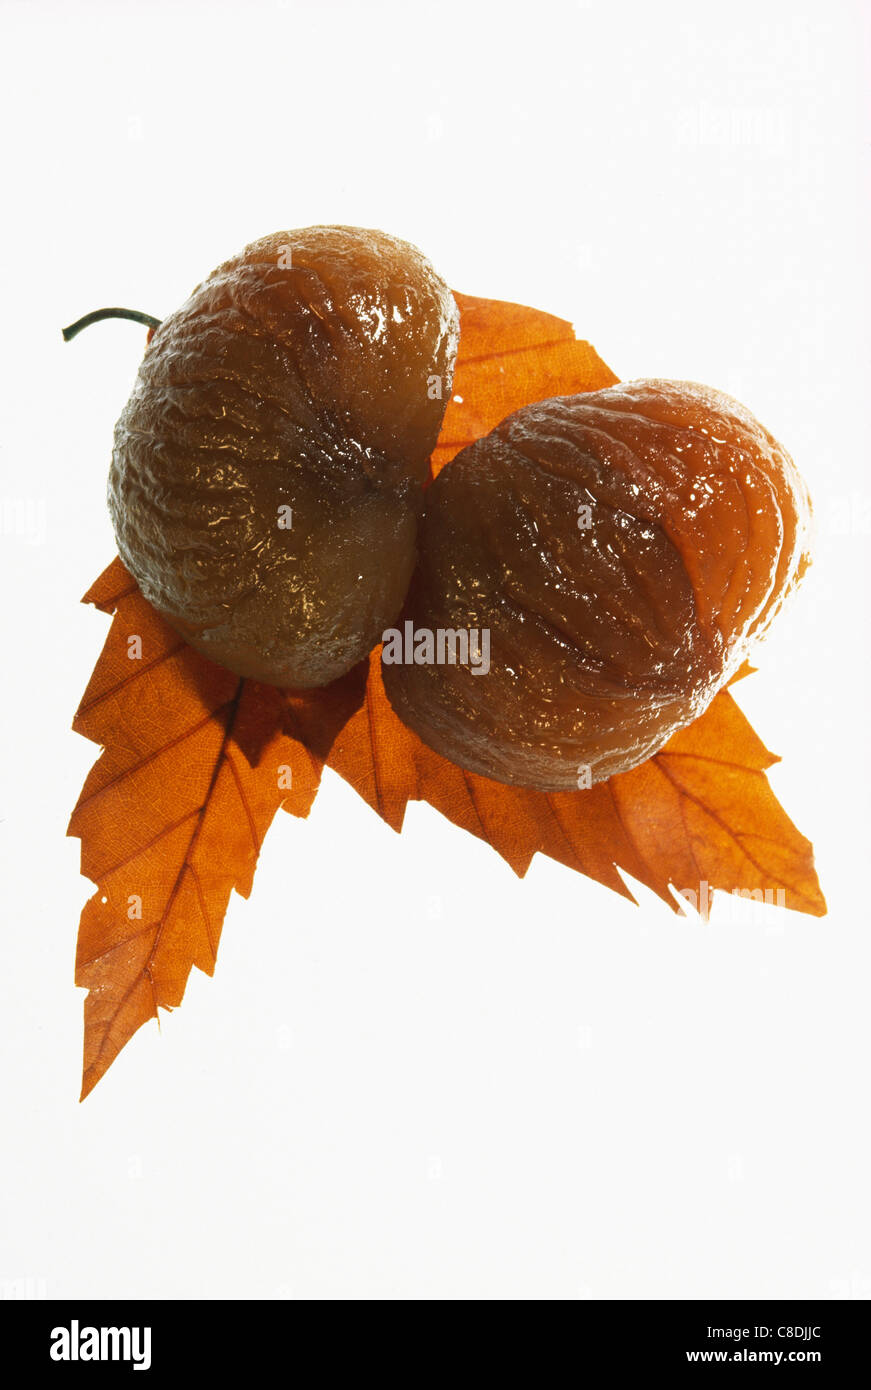 Marroni canditi e foglie di castagno Foto Stock